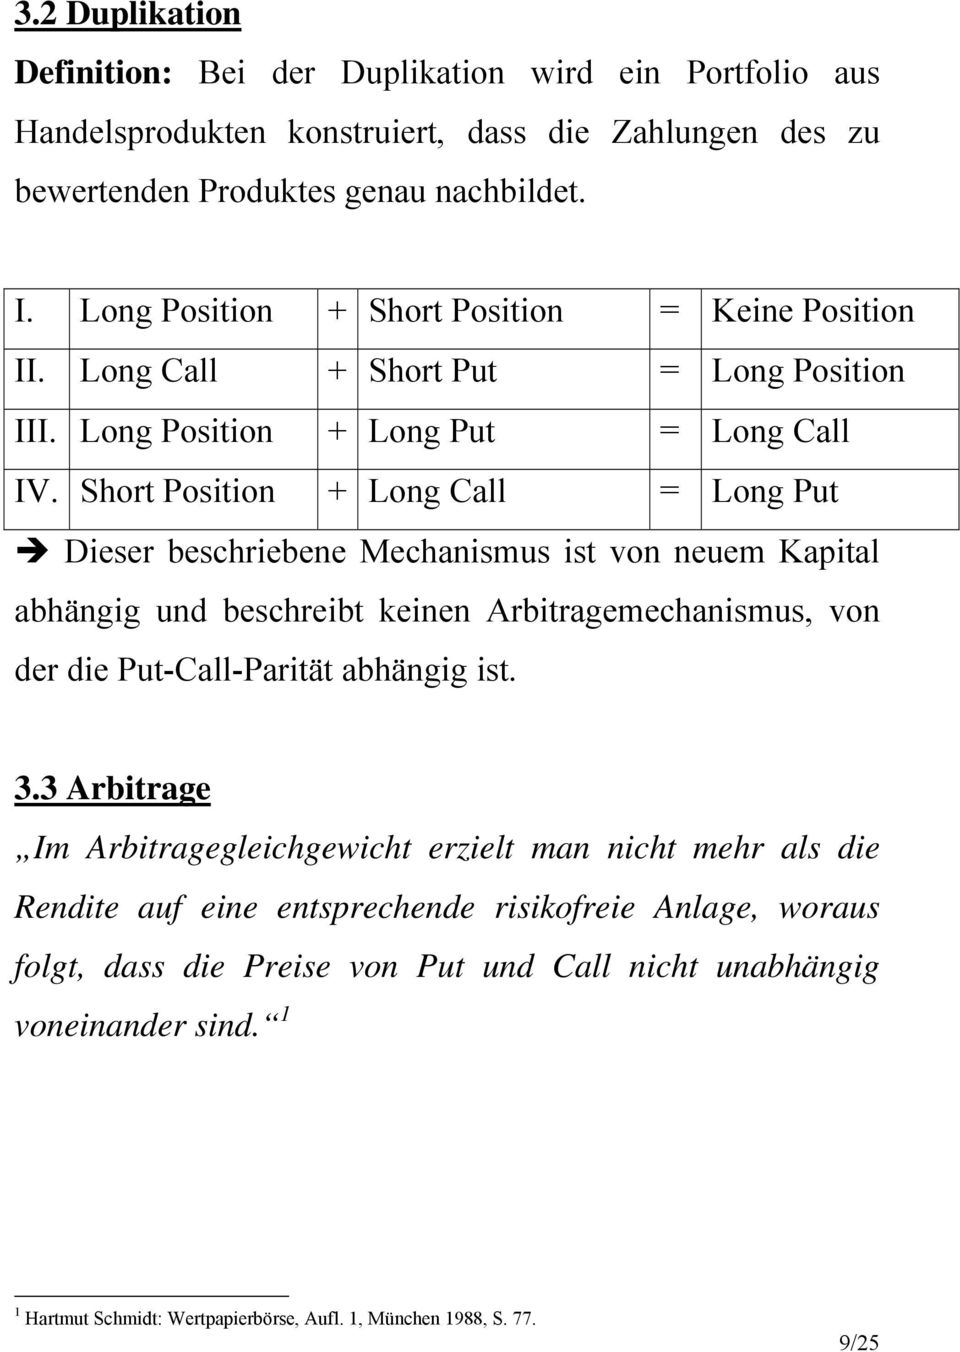 Short Position + Long Call = Long Put Dieser beschriebene Mechanismus ist von neuem Kapital abhängig und beschreibt keinen Arbitragemechanismus, von der die Put-Call-Parität abhängig ist. 3.